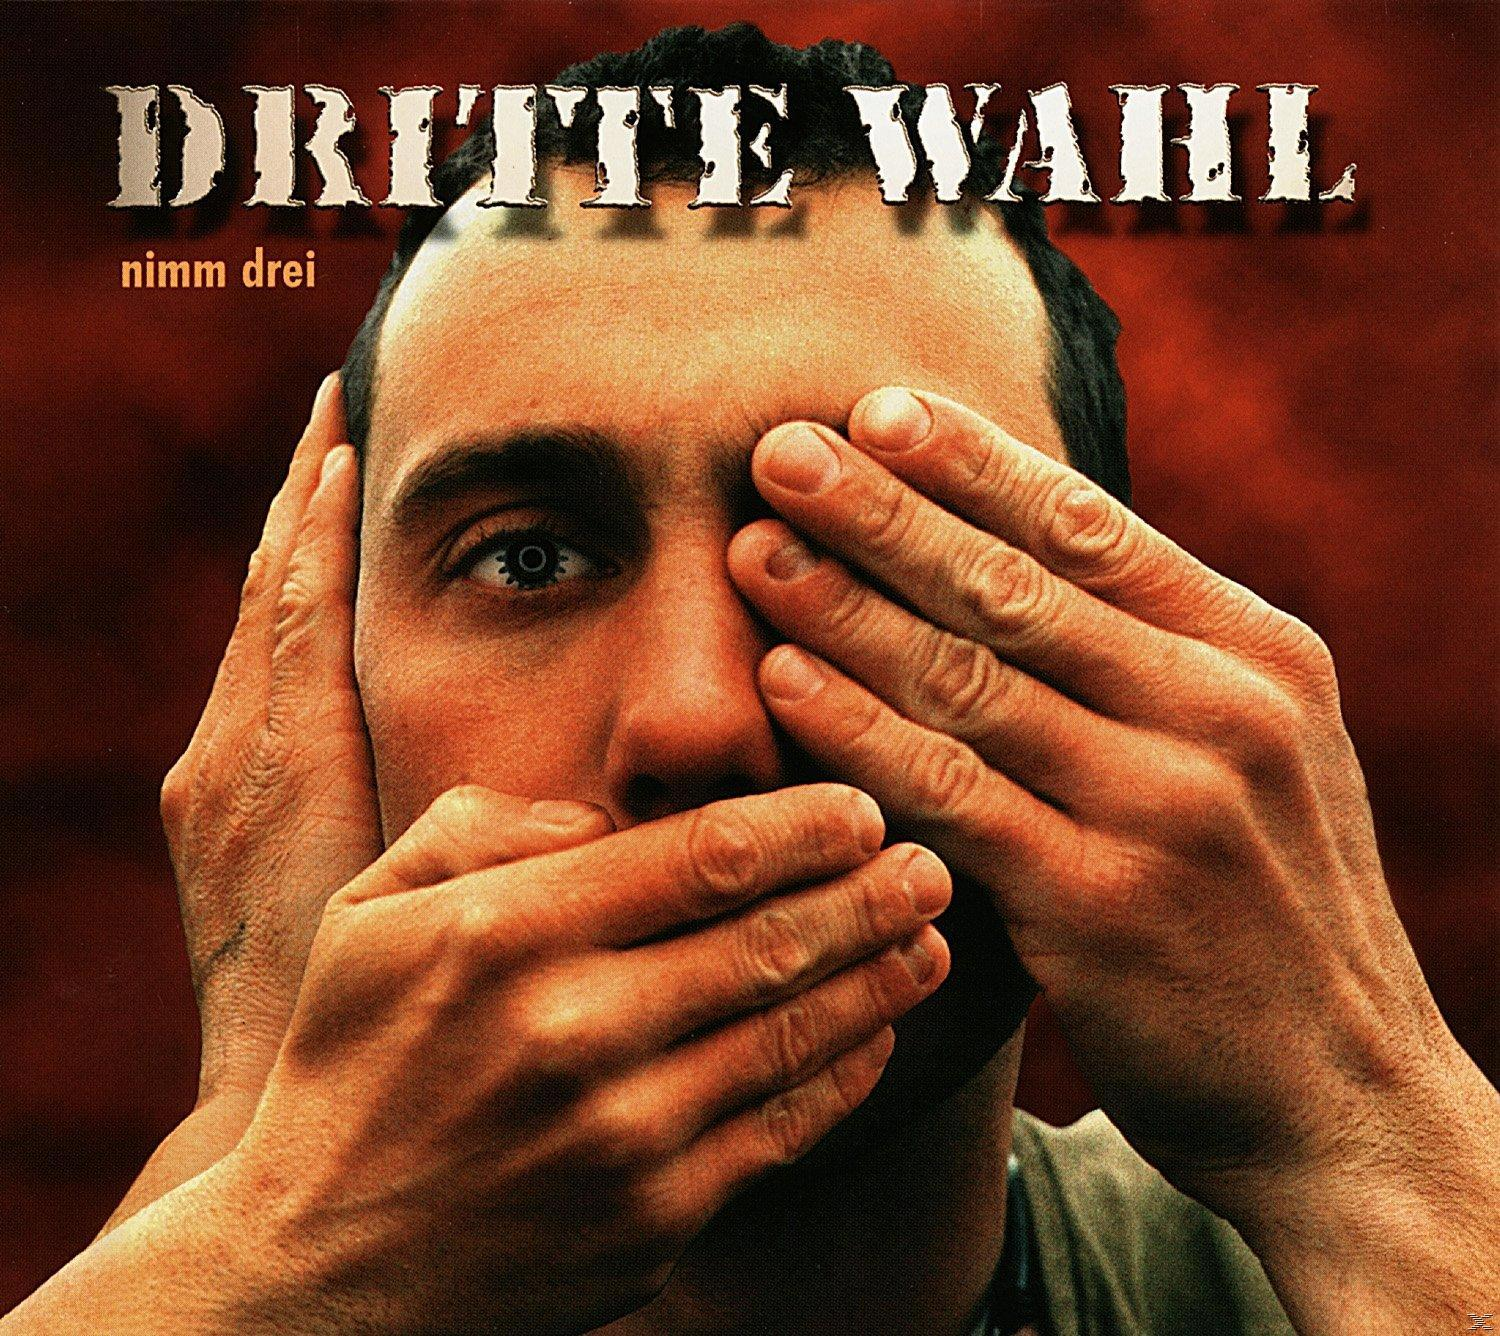 (CD) Dritte Drei Wahl - - Nimm